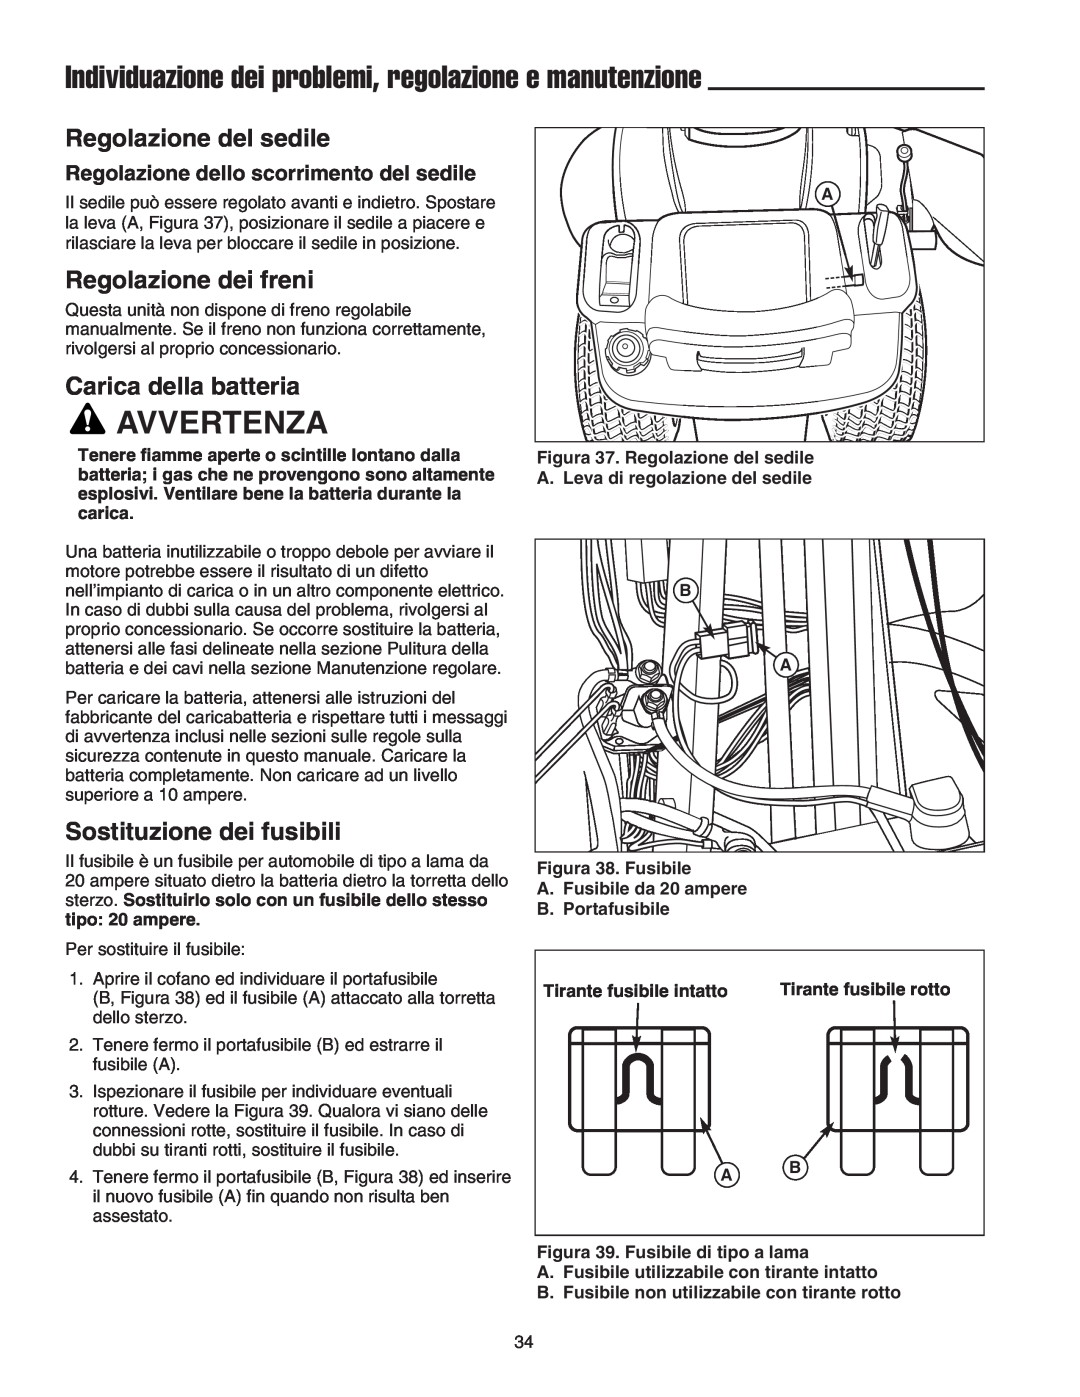 Briggs & Stratton Printer Individuazione dei problemi, regolazione e manutenzione, Regolazione del sedile, Avvertenza 